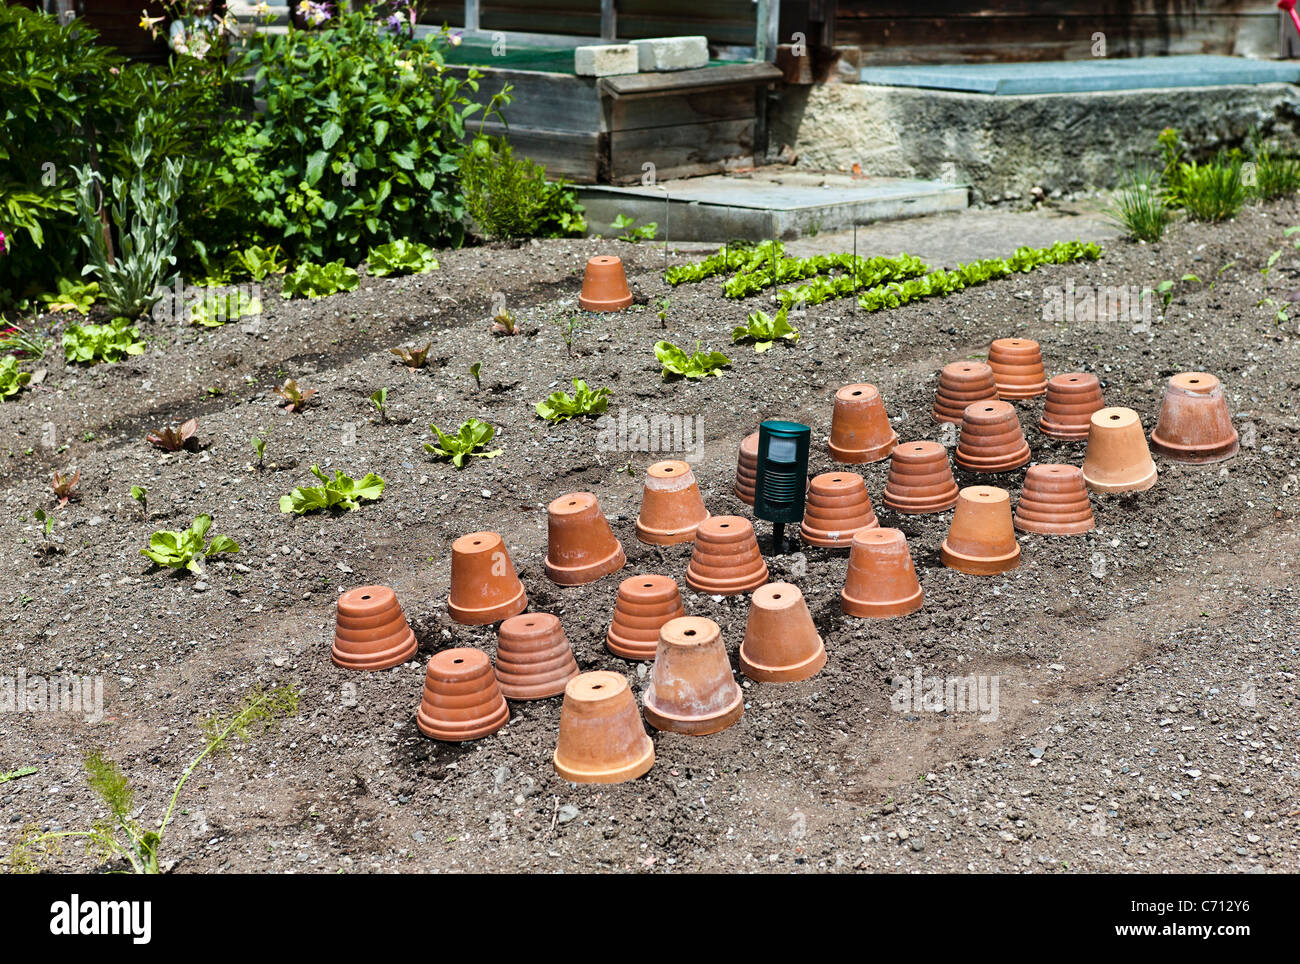 Des rangées de pots de fleurs en terre cuite protégeant et en forçant les jeunes plantes de légumes dans un jardin suisse en Juin Banque D'Images